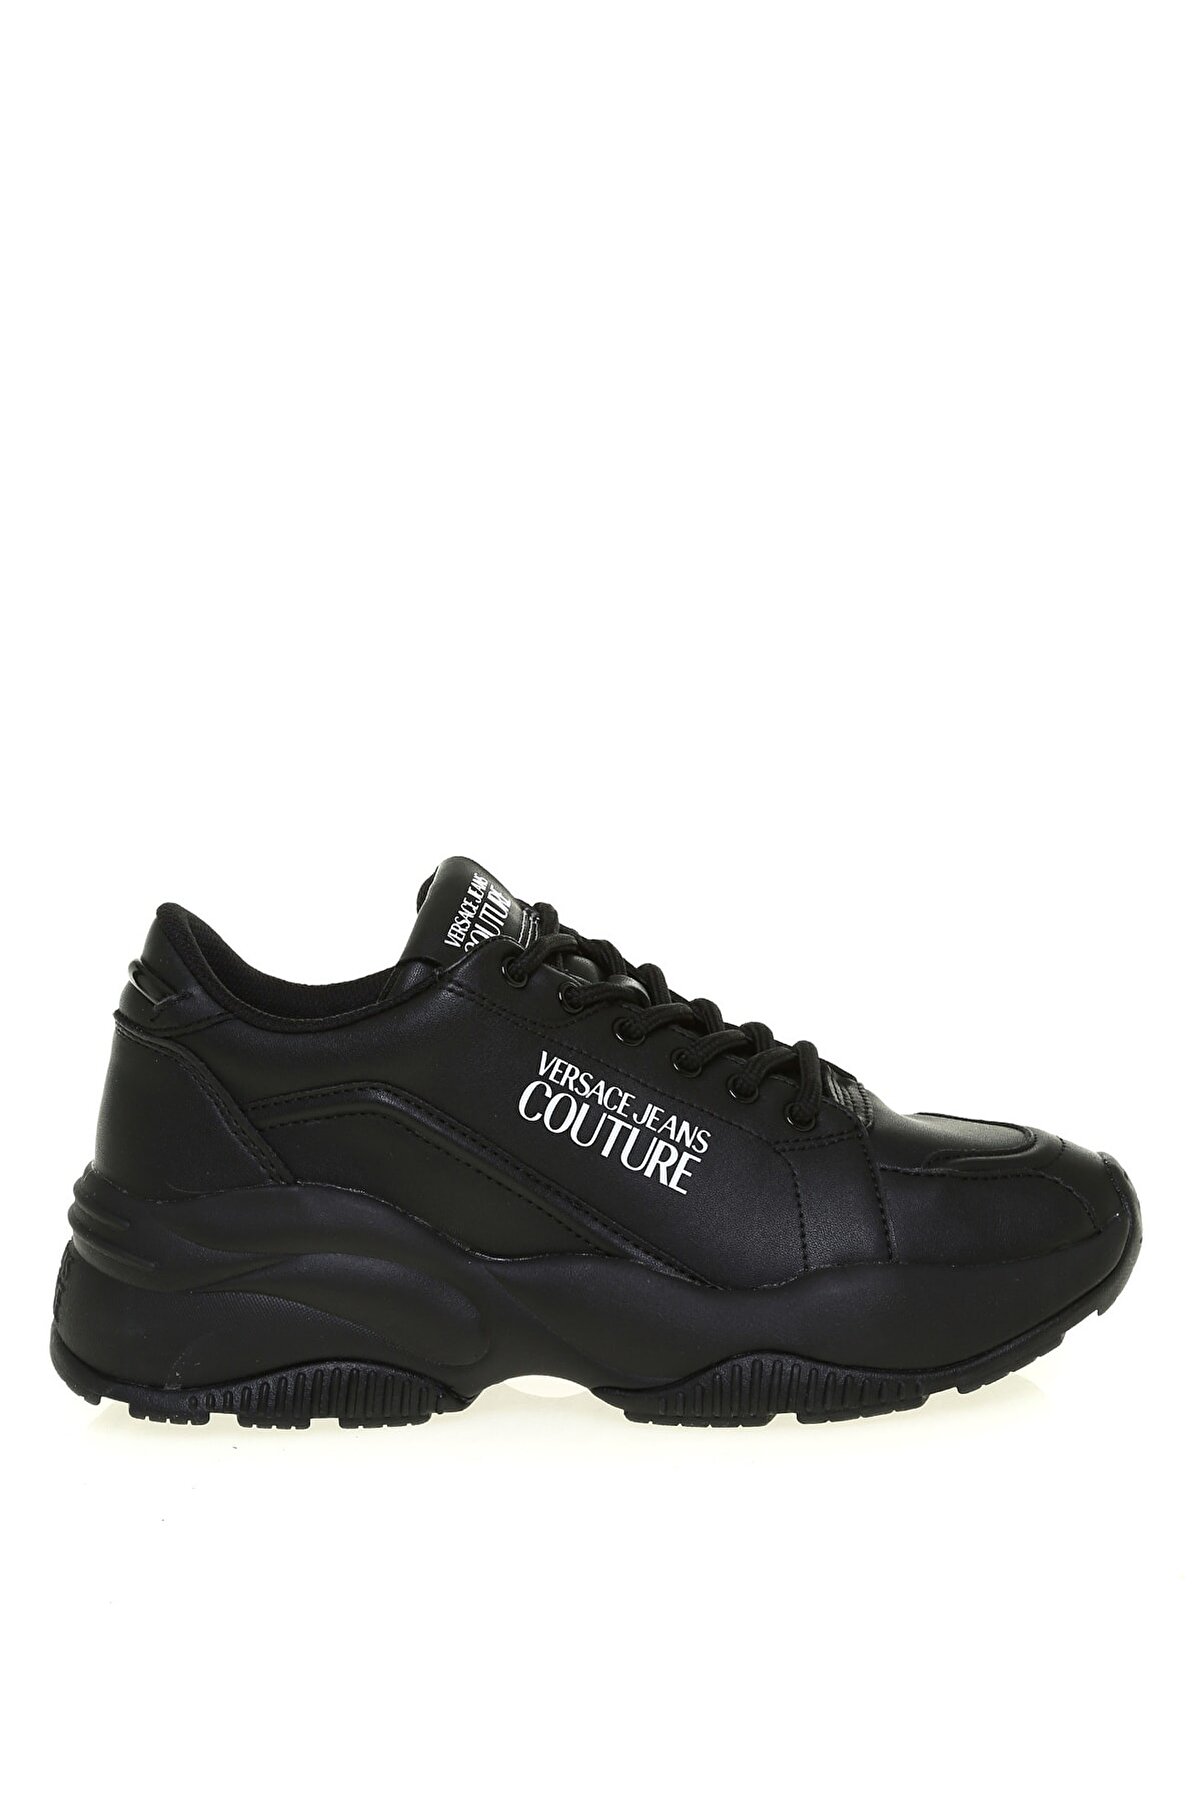 Versace E0yzbsı371779899 Siyah Sneaker